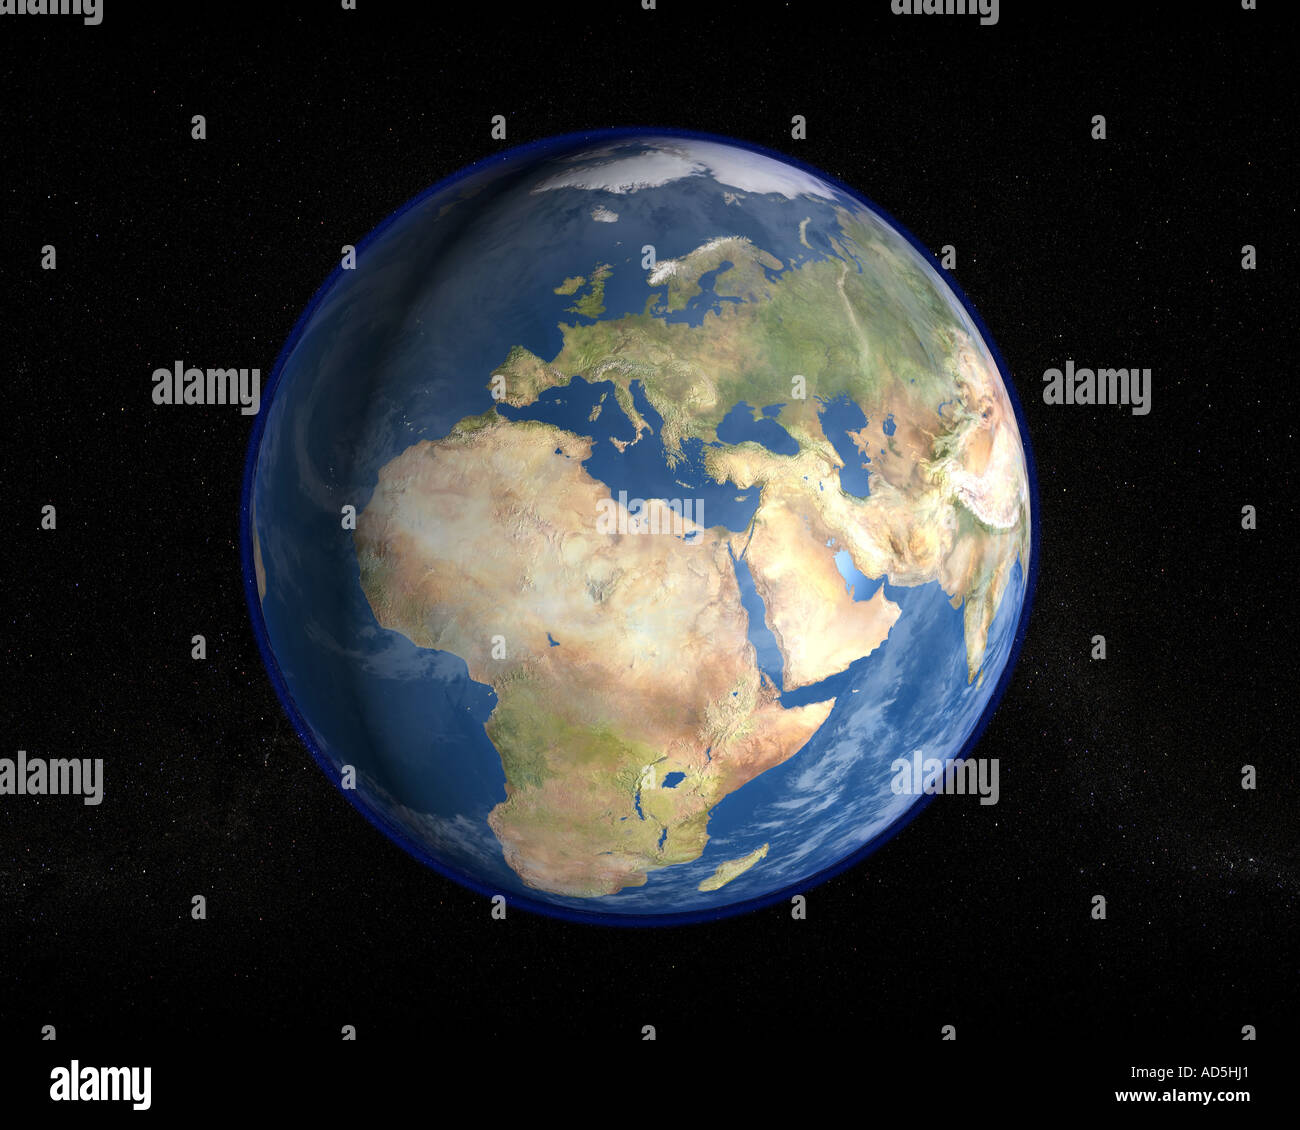 La planète Terre vue de l'espace dans une image de rendu photoréaliste haute résolution Banque D'Images